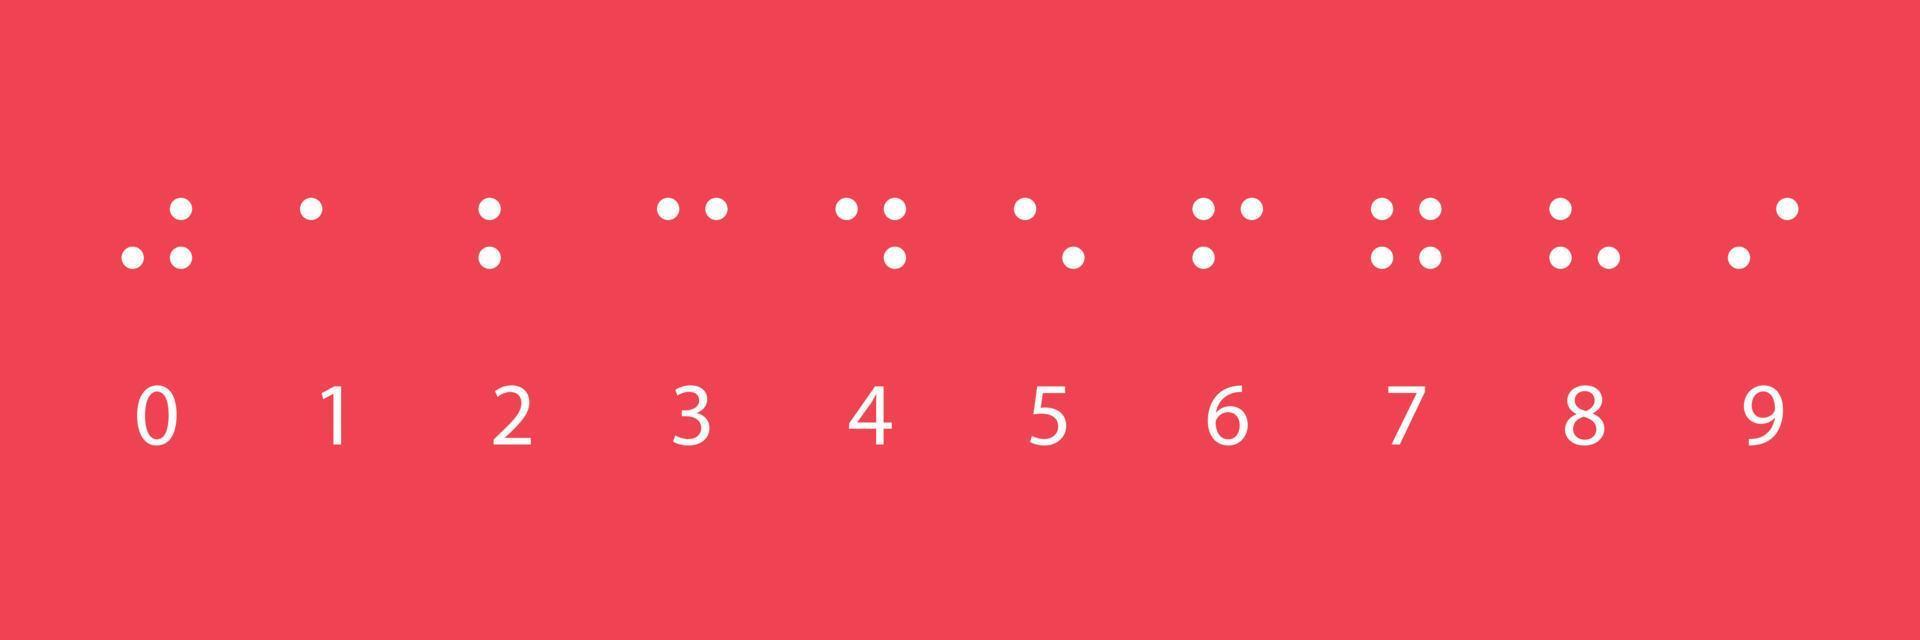 braille nummers. tactiel schrijfsysteem dat wordt gebruikt door mensen met een visuele handicap. vectorillustratie op rode achtergrond vector